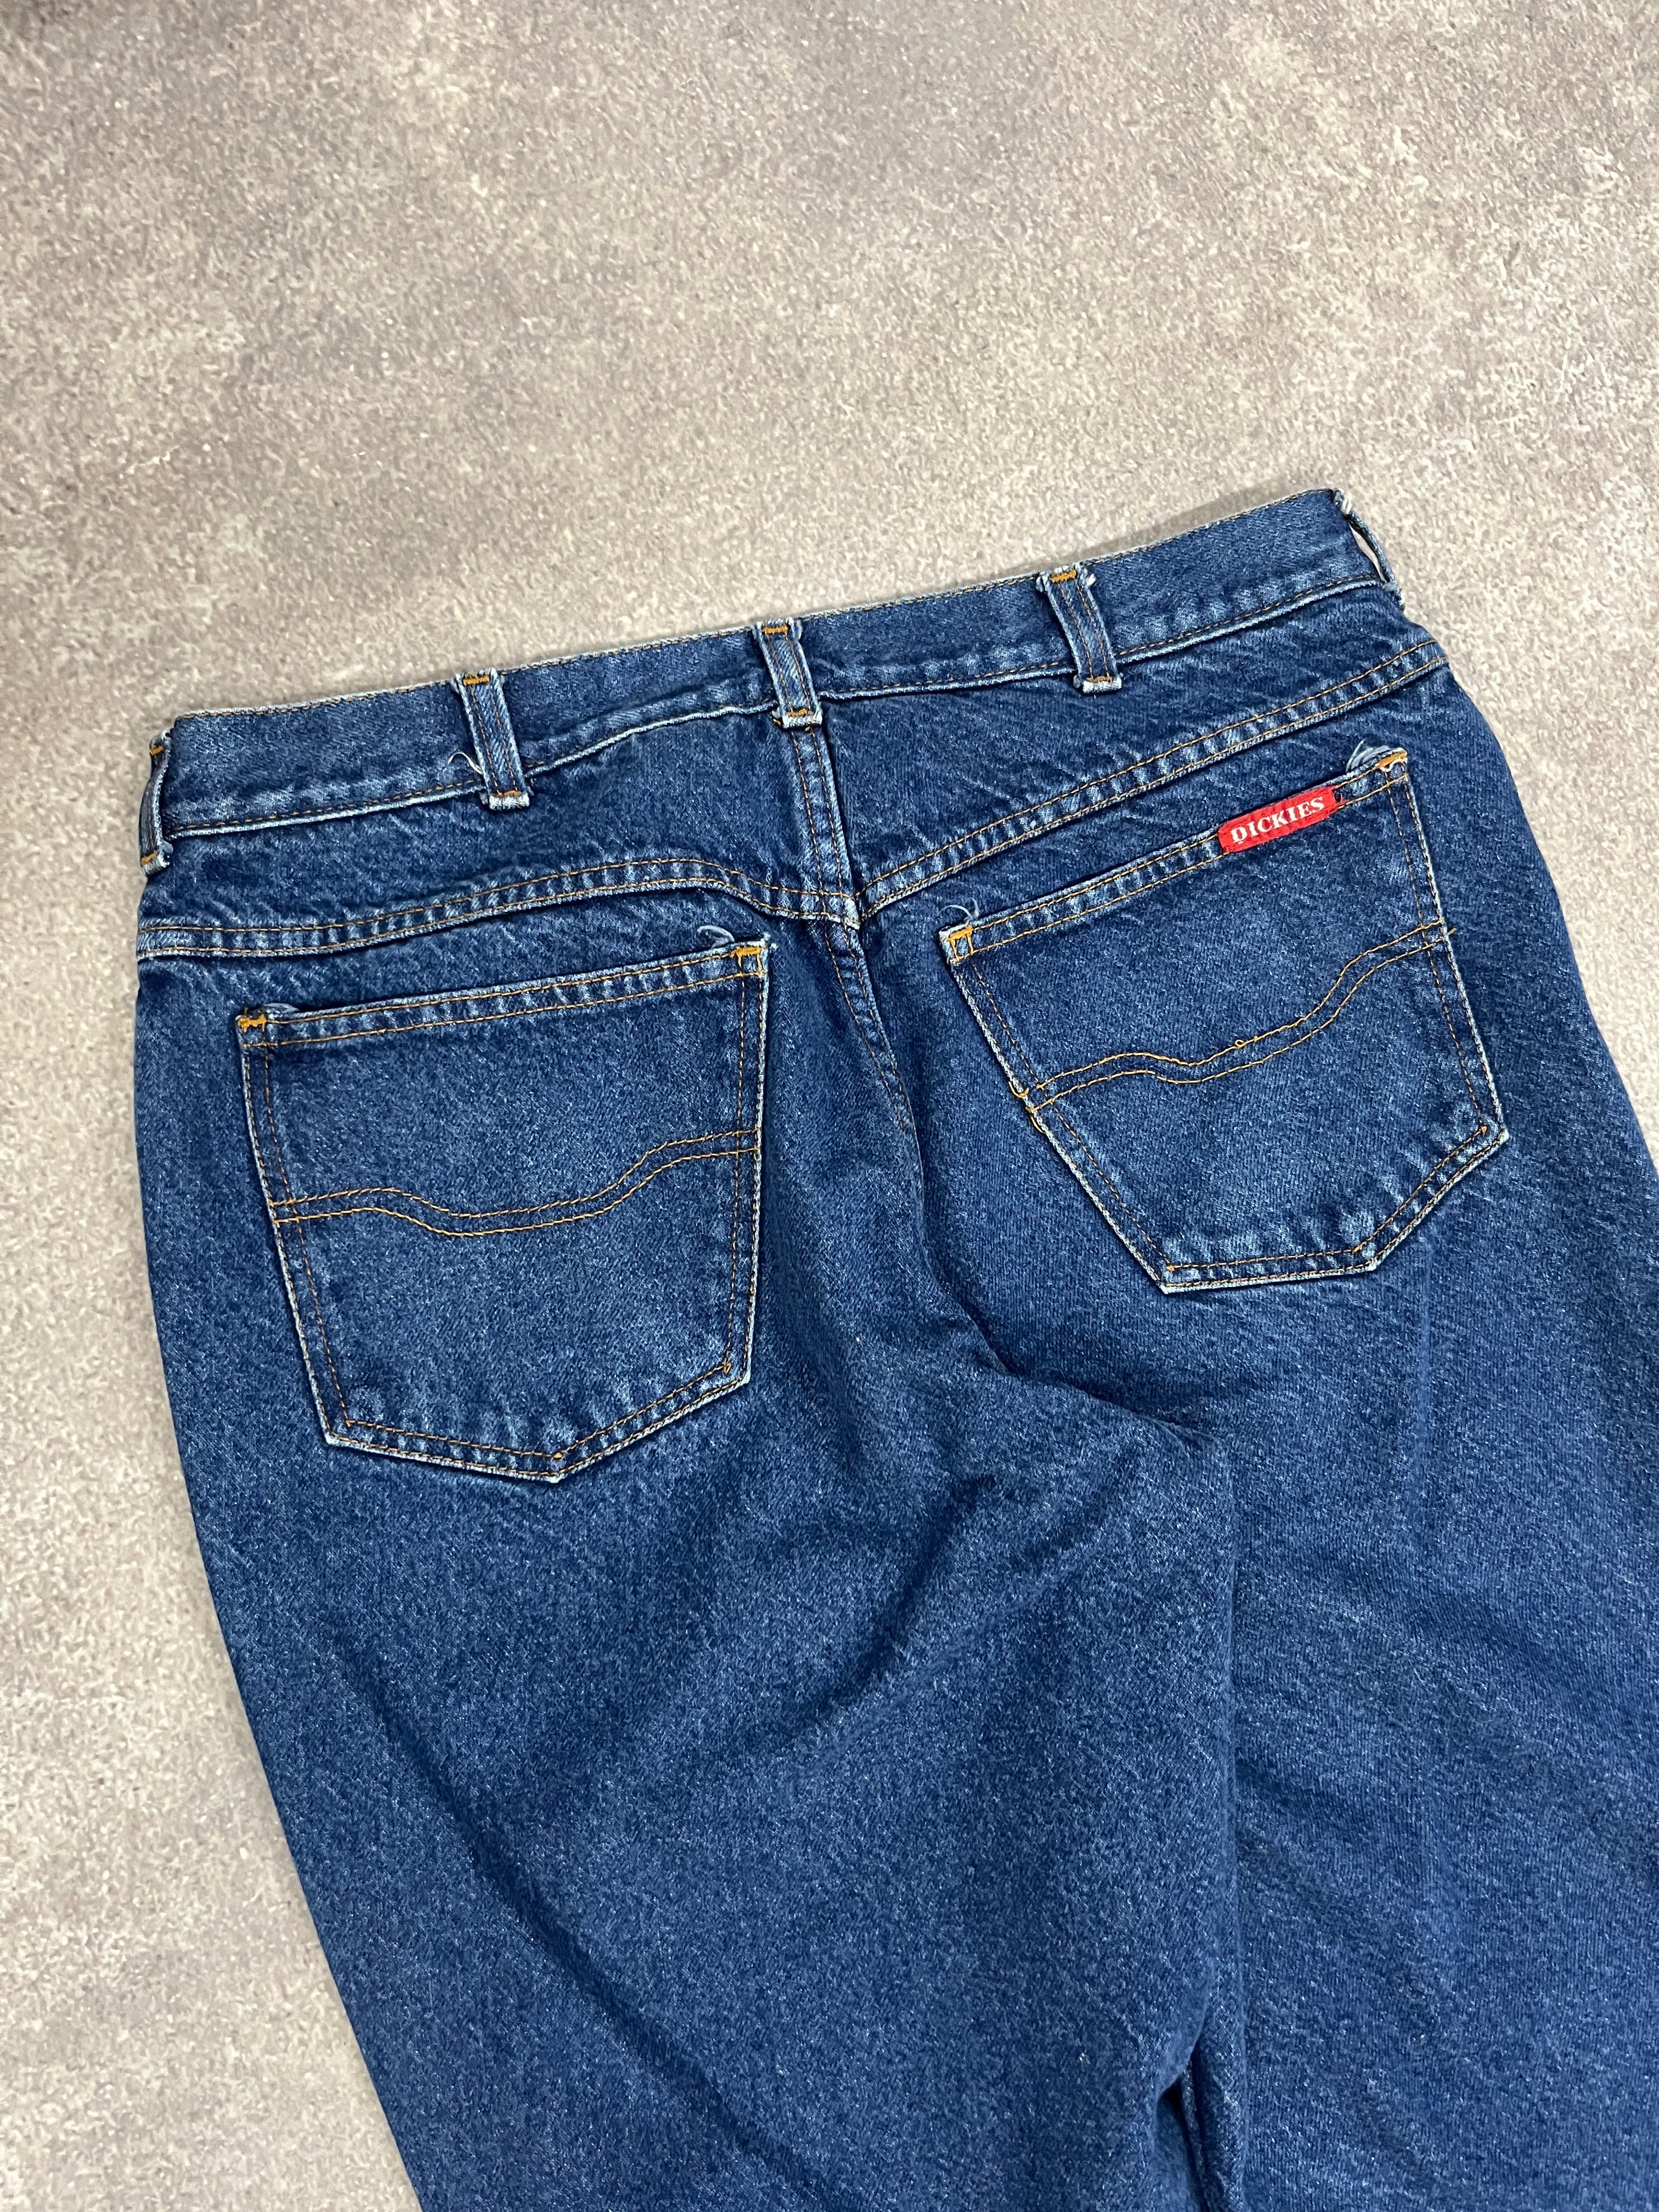 Vintage Dickies Jeans Blue // W34 L31 - RHAGHOUSE VINTAGE